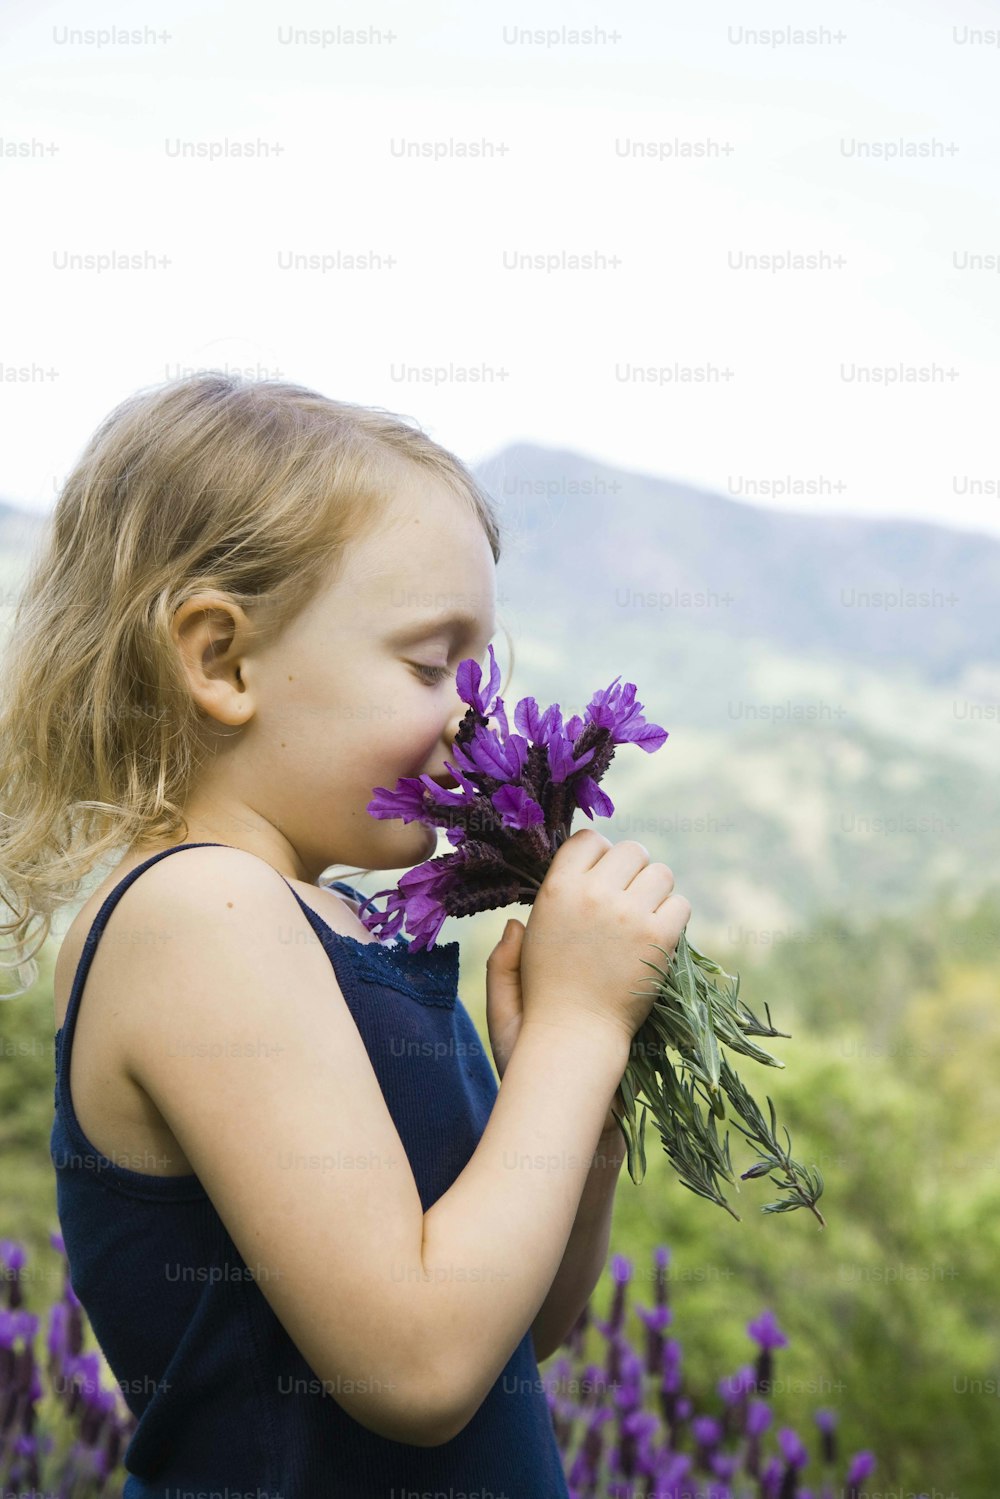 Ein kleines Mädchen, das einen Strauß lila Blumen riecht